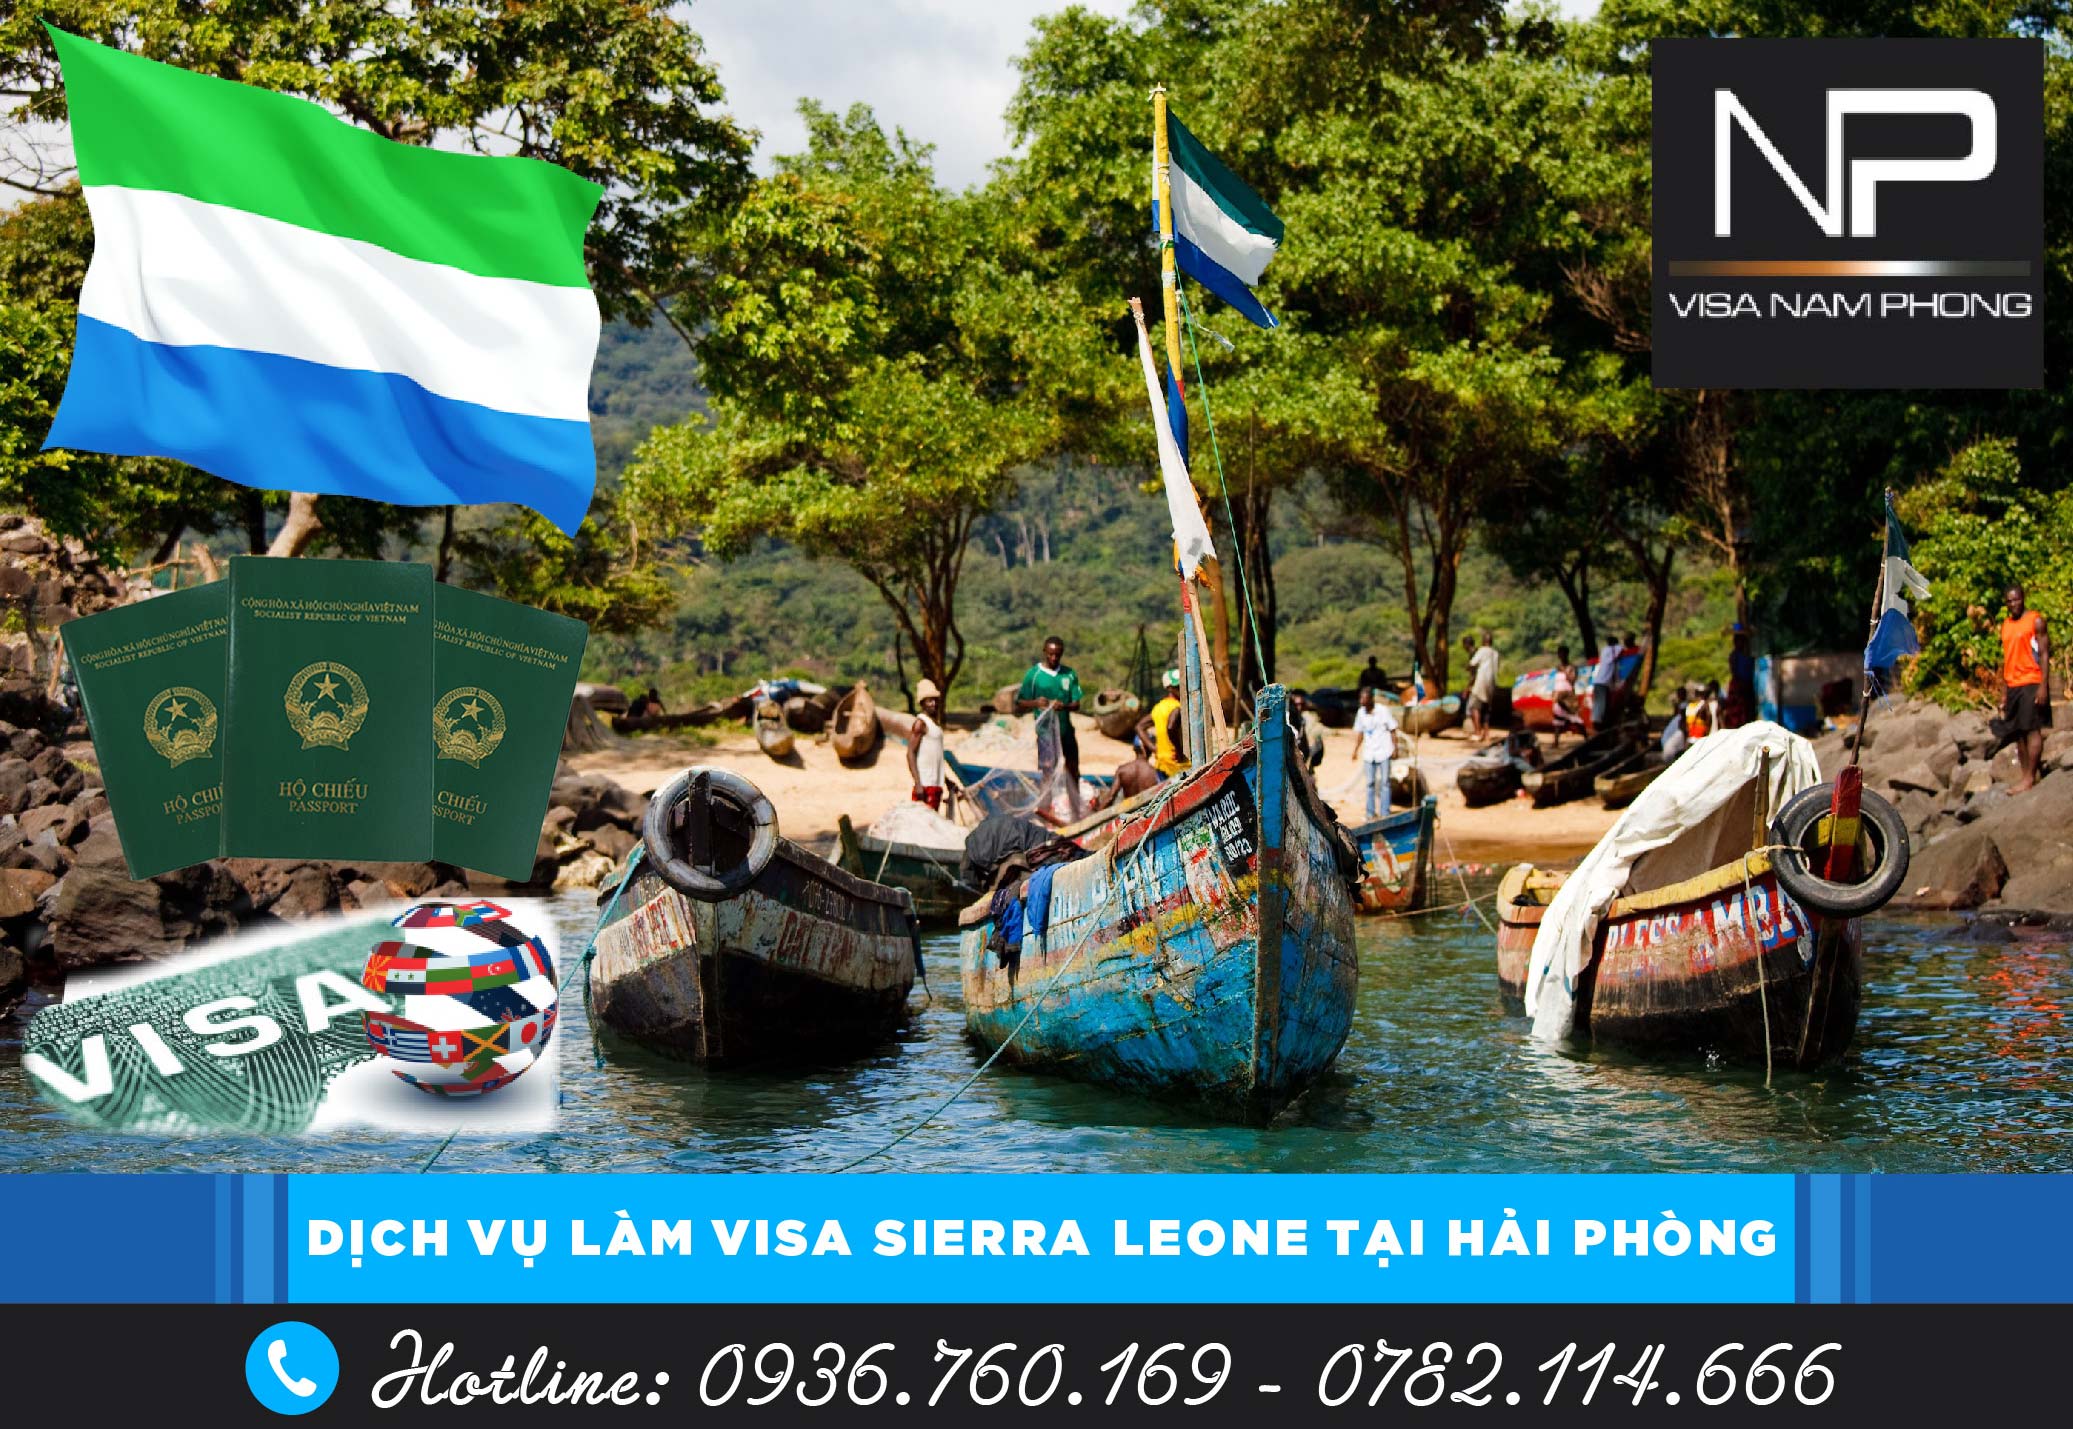 Dịch vụ làm visa Sierra Leone tại Hải Phòng